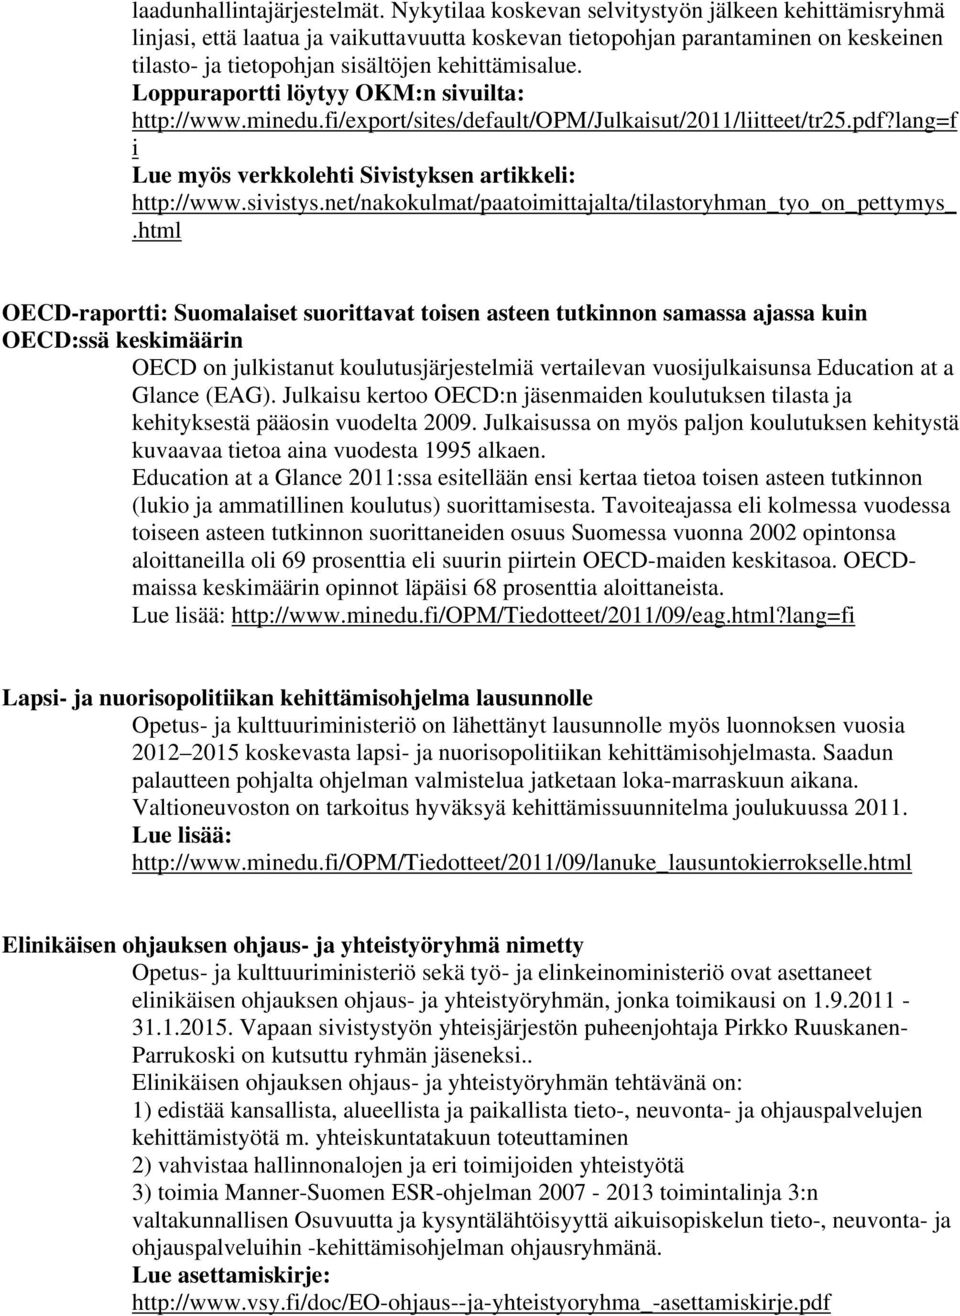 Loppuraportti löytyy OKM:n sivuilta: http://www.minedu.fi/export/sites/default/opm/julkaisut/2011/liitteet/tr25.pdf?lang=f i Lue myös verkkolehti Sivistyksen artikkeli: http://www.sivistys.